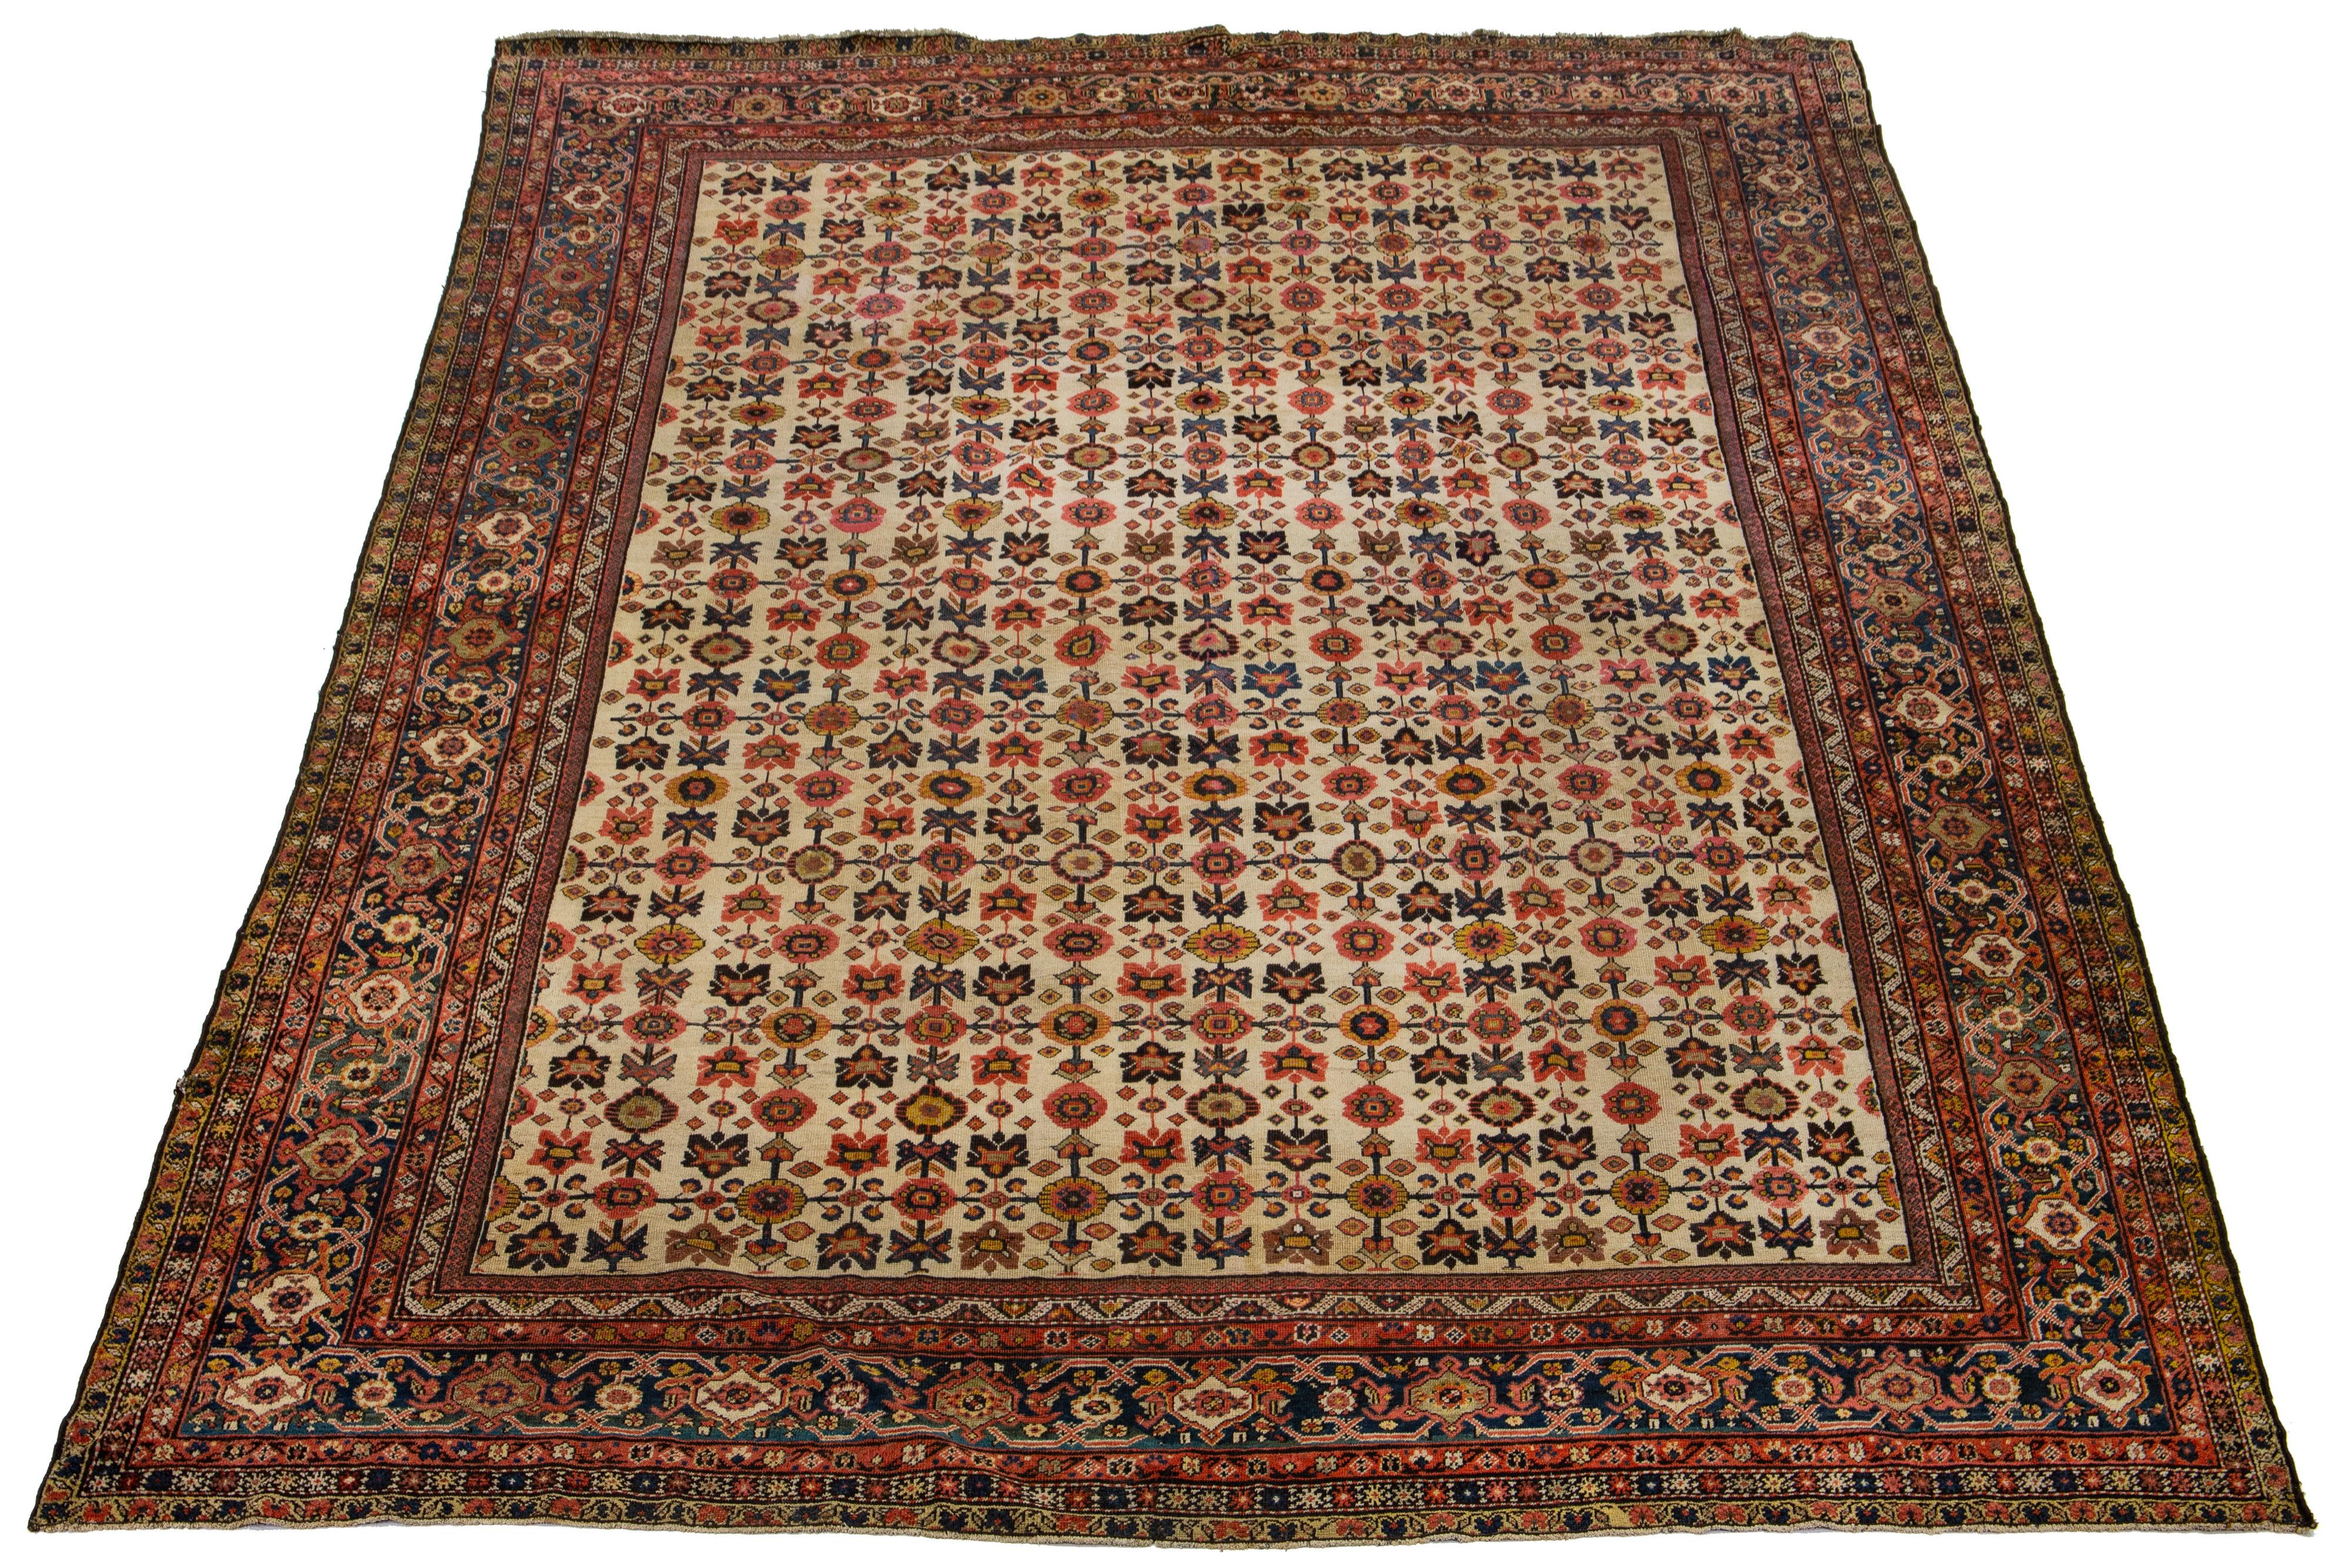 Dies ist eine schöne persische antike Farahan handgeknüpften Wollteppich aus den 1880er Jahren. Es hat ein beigefarbenes Farbfeld und weist klassische mehrfarbige Akzente in einem floralen Muster auf.

Dieser Teppich misst 11'10